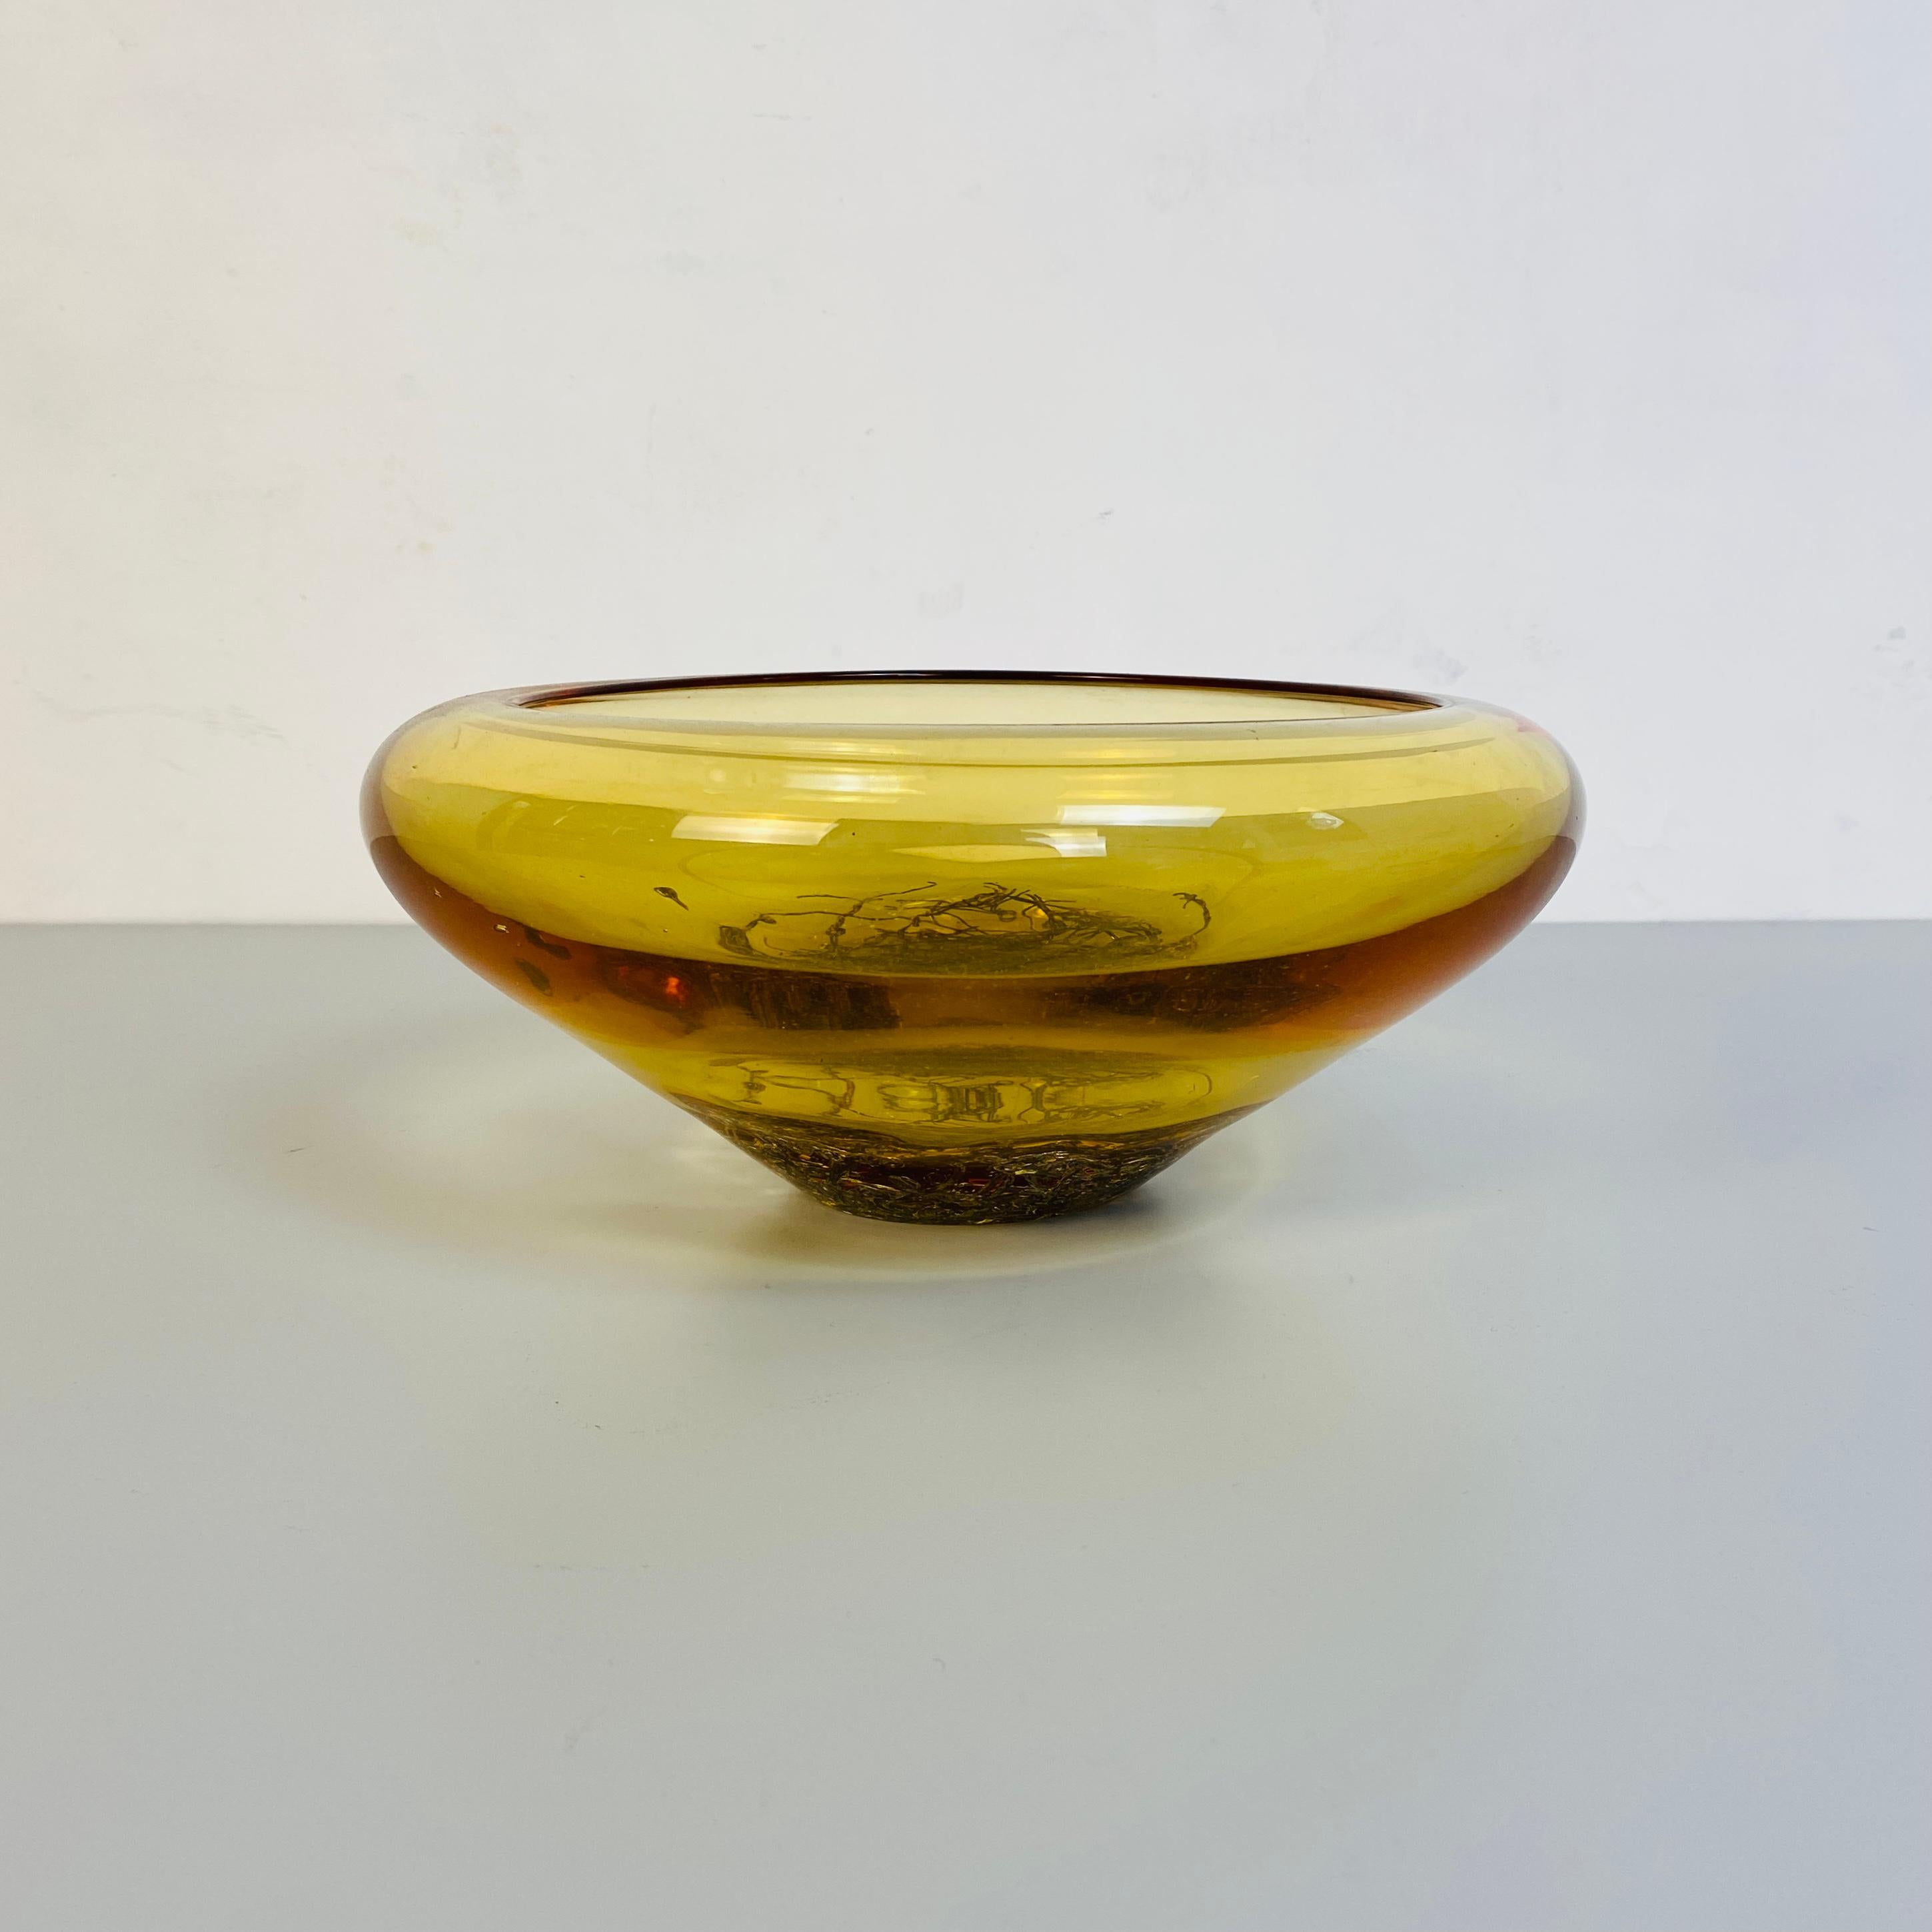 Bol jaune en verre de Murano italien, 1970 
Bol jaune de forme irrégulière en verre doré de Murano avec décoration métallique interne incorporée dans le verre, produit entre les années 1970 et 1980 ; il est parfait dans une entrée sur un piédestal